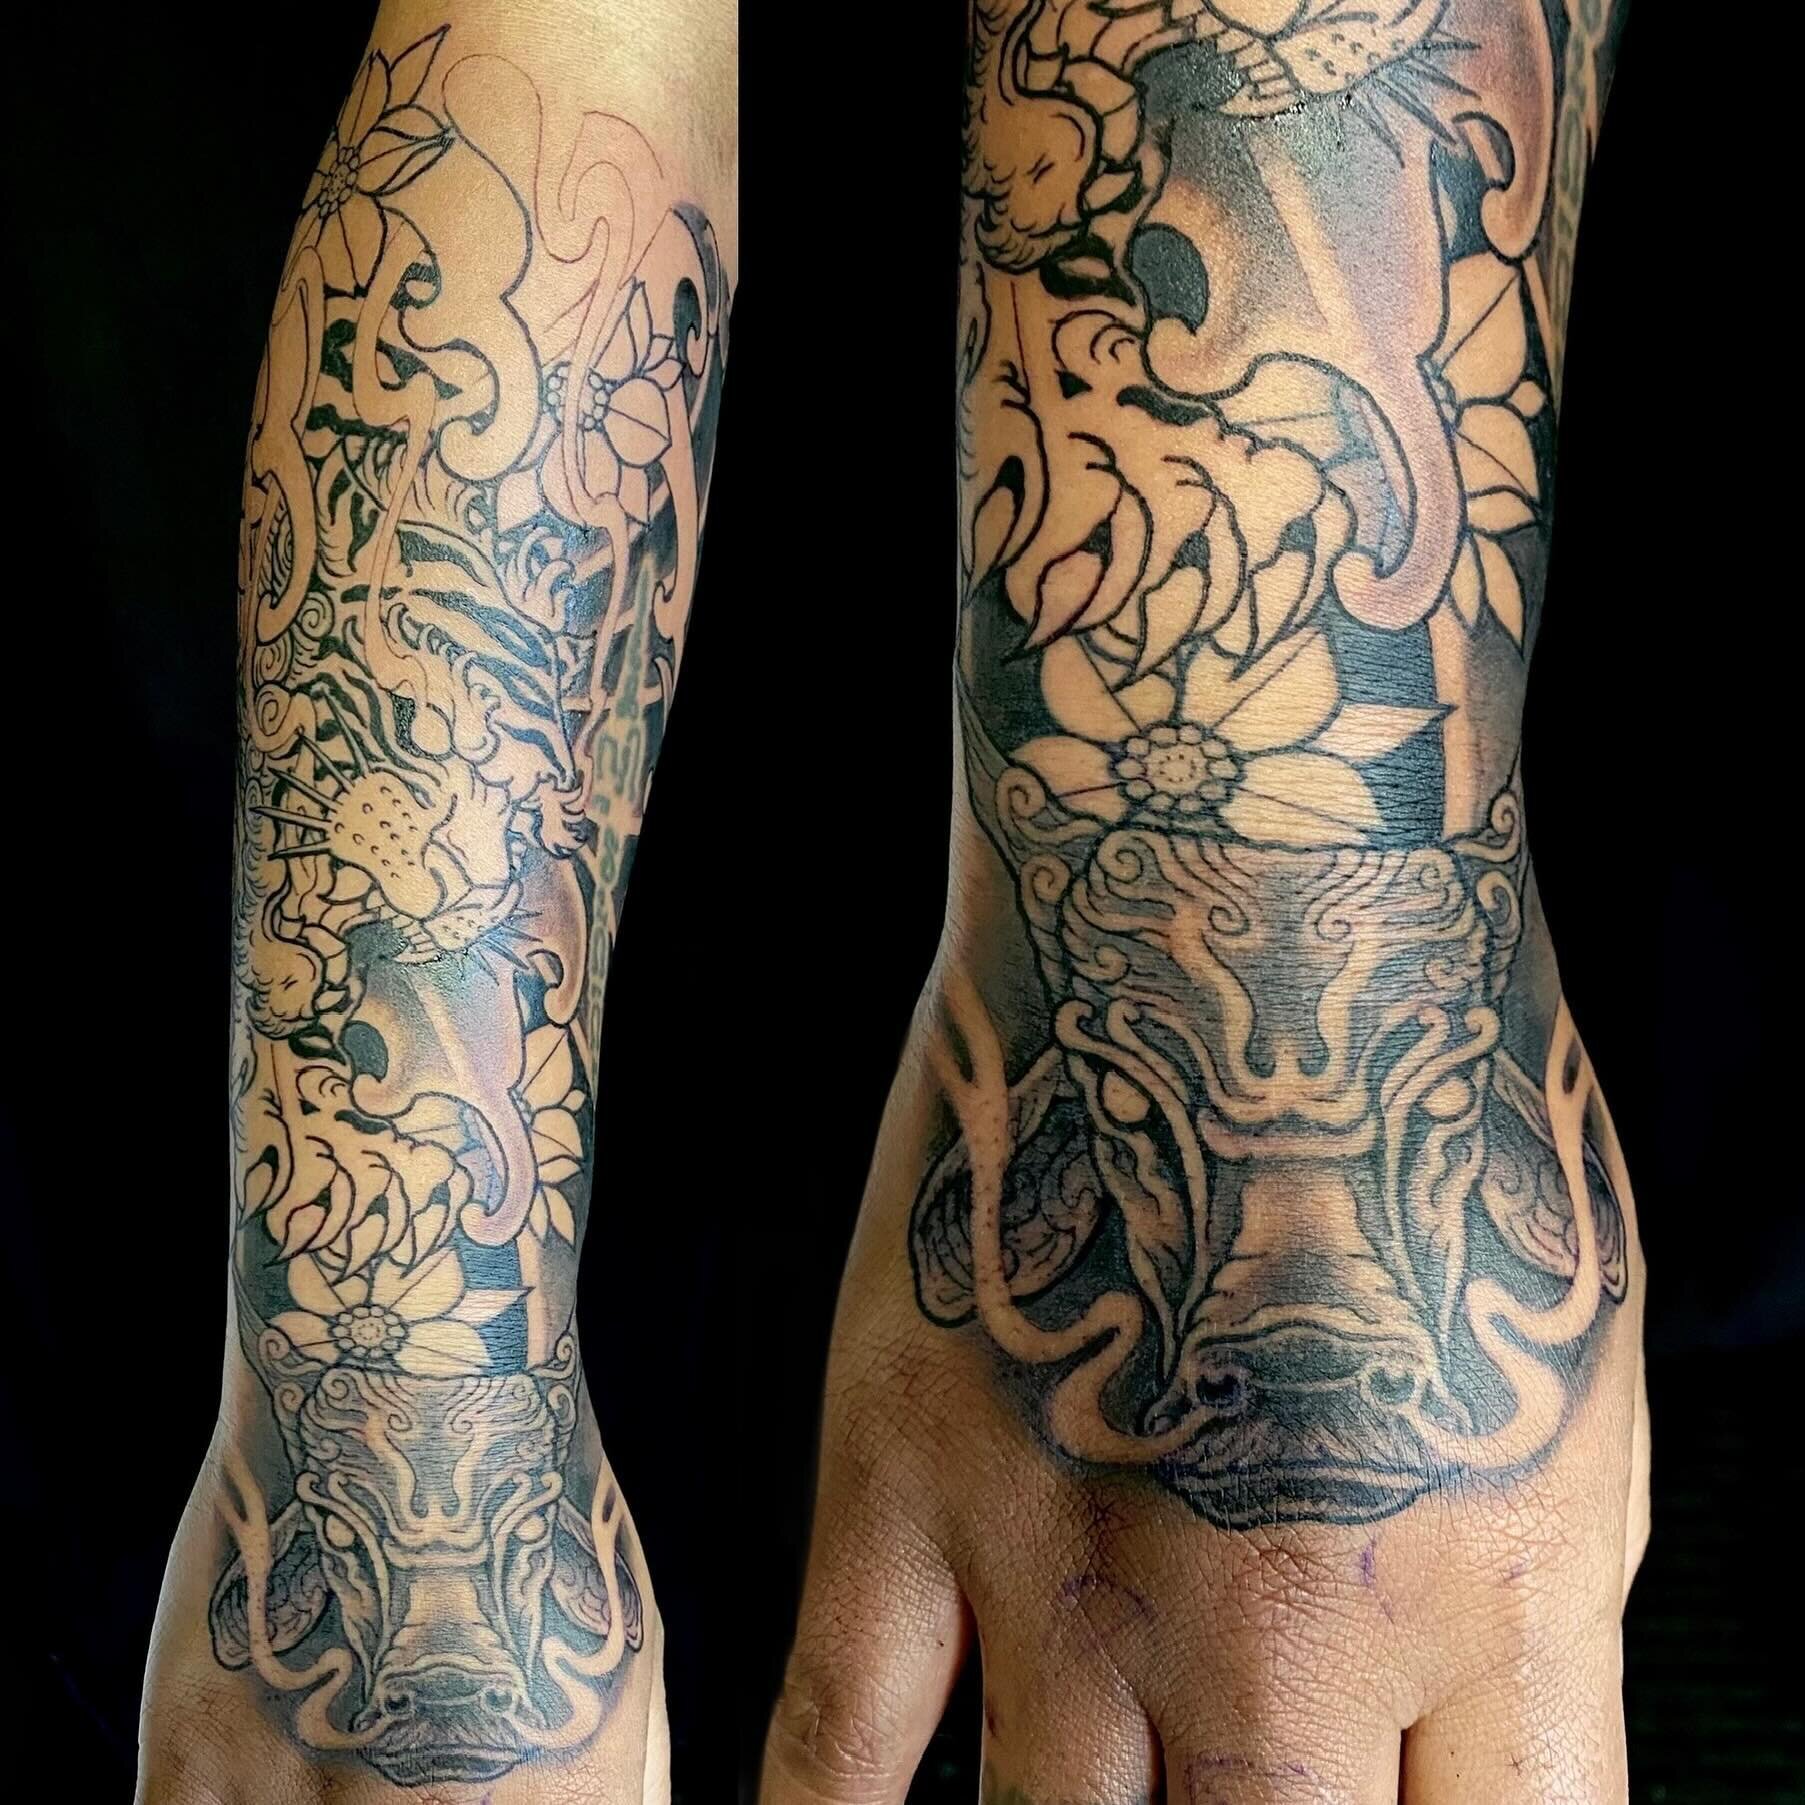 Beginning. 
.
.
.
.
.
.
.
.

#tattoo #tattoos #tattooed #tattooartist #cohenfloch  #victoriatattoo #yyjtattoo #vanisletattoo  #vancouvertattoo #tattoodo  #inked #刺青 #tattooworkers #tattoolife